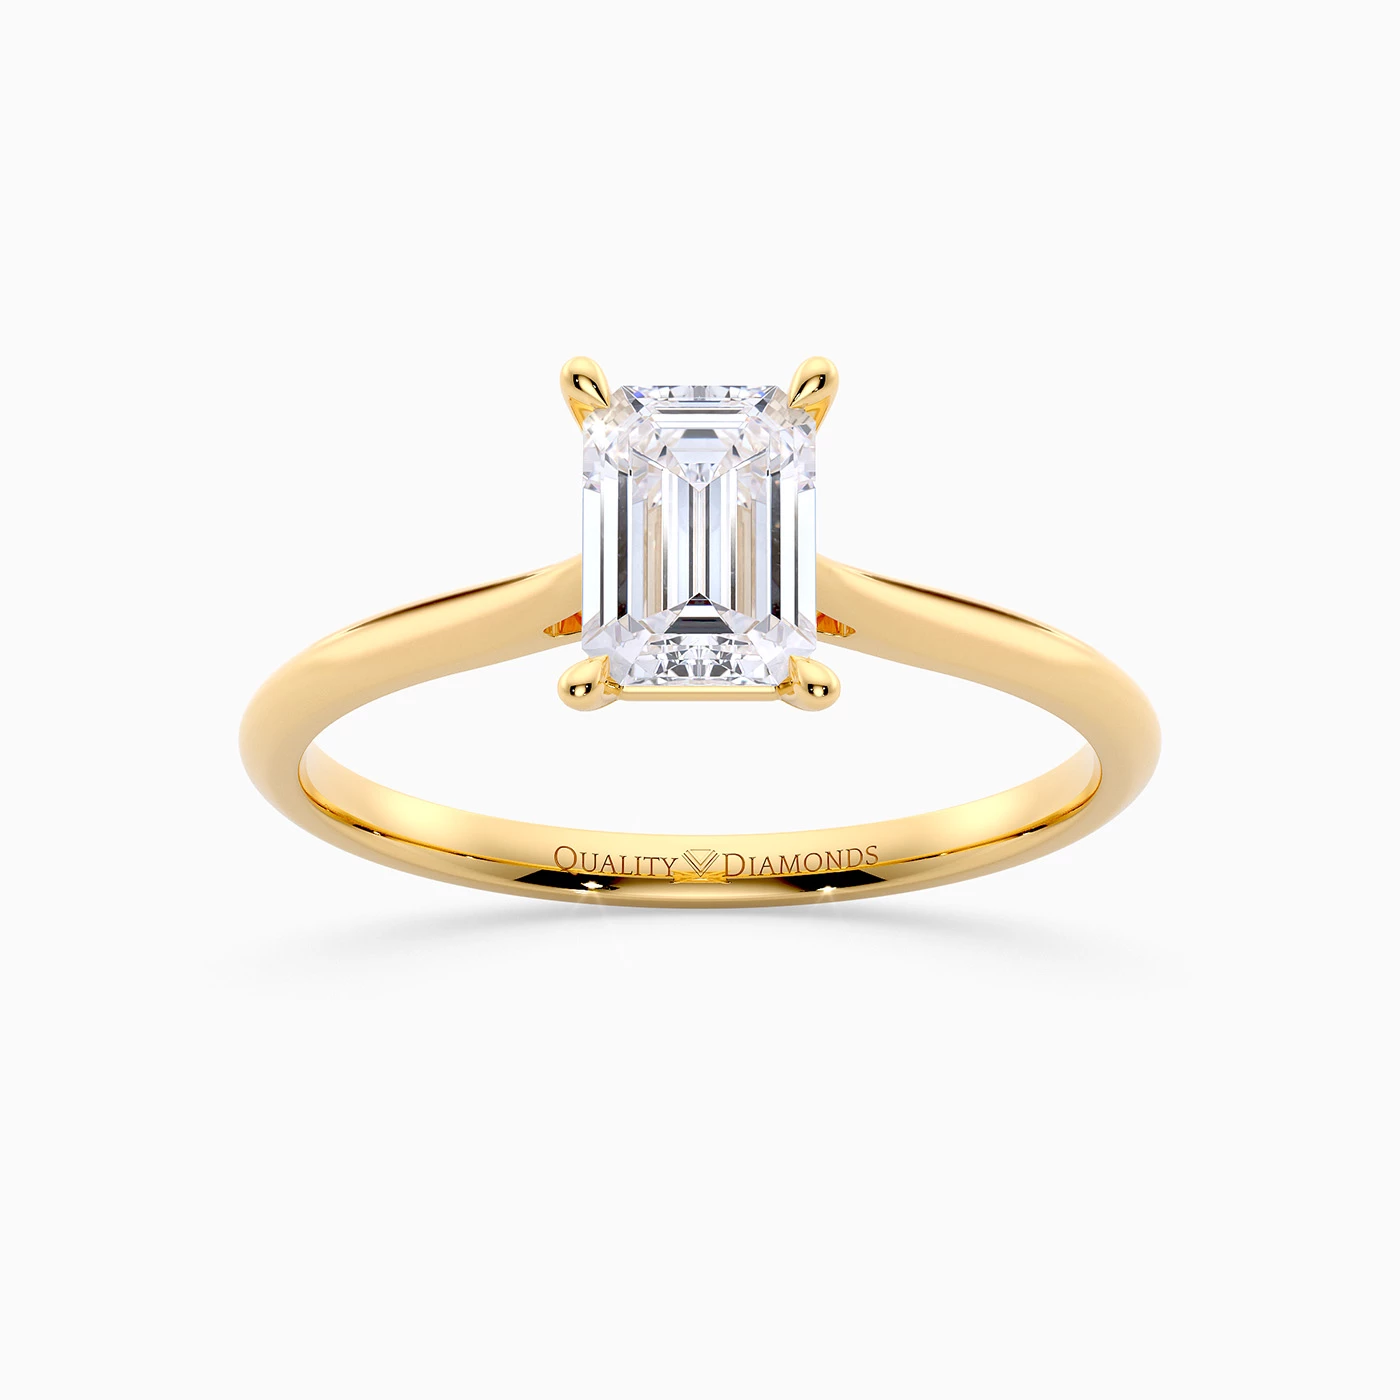 Emerald Carys Diamond Ring in 18K Yellow Gold